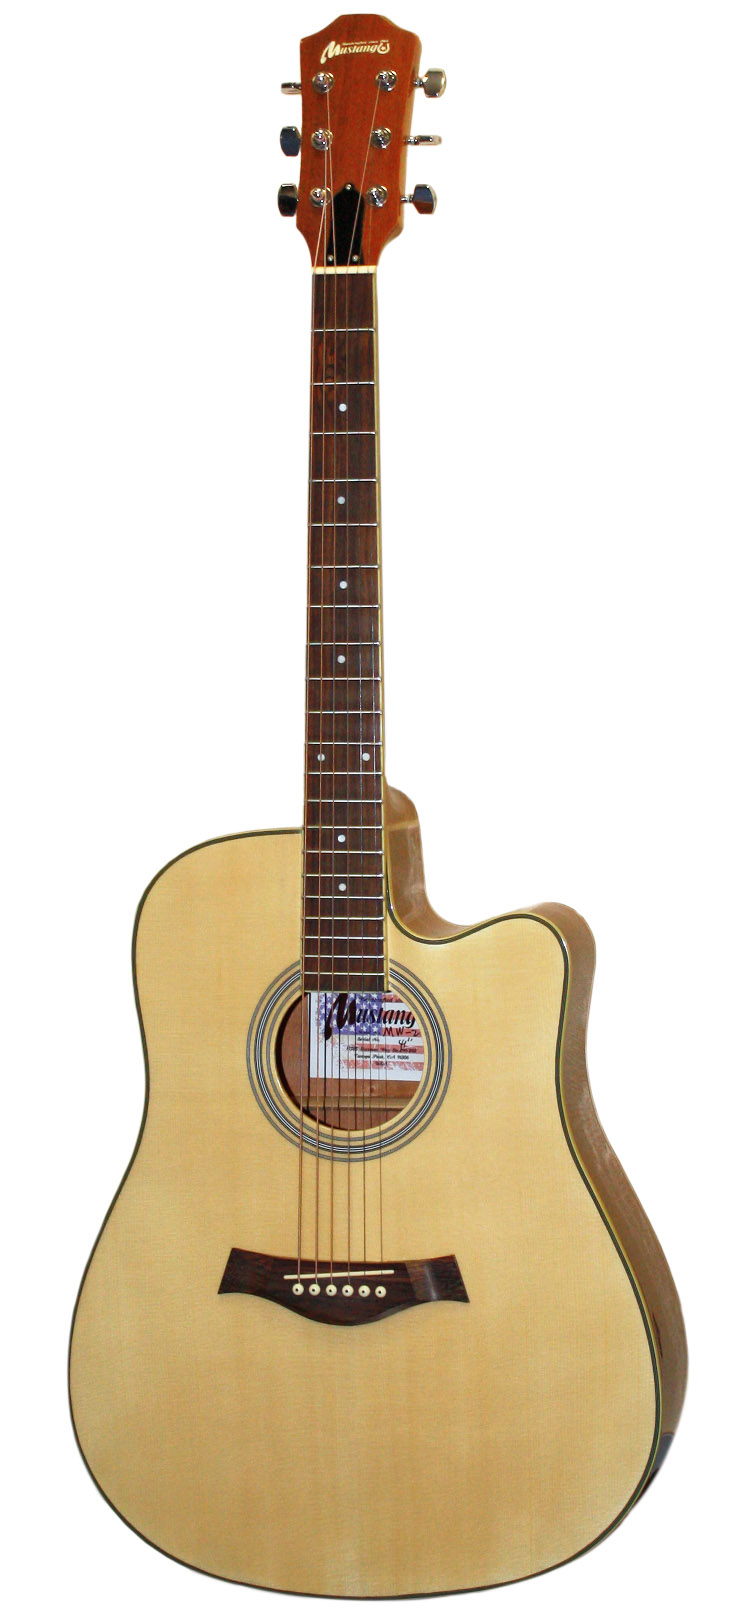 Акустическая гитара Mustang MW2